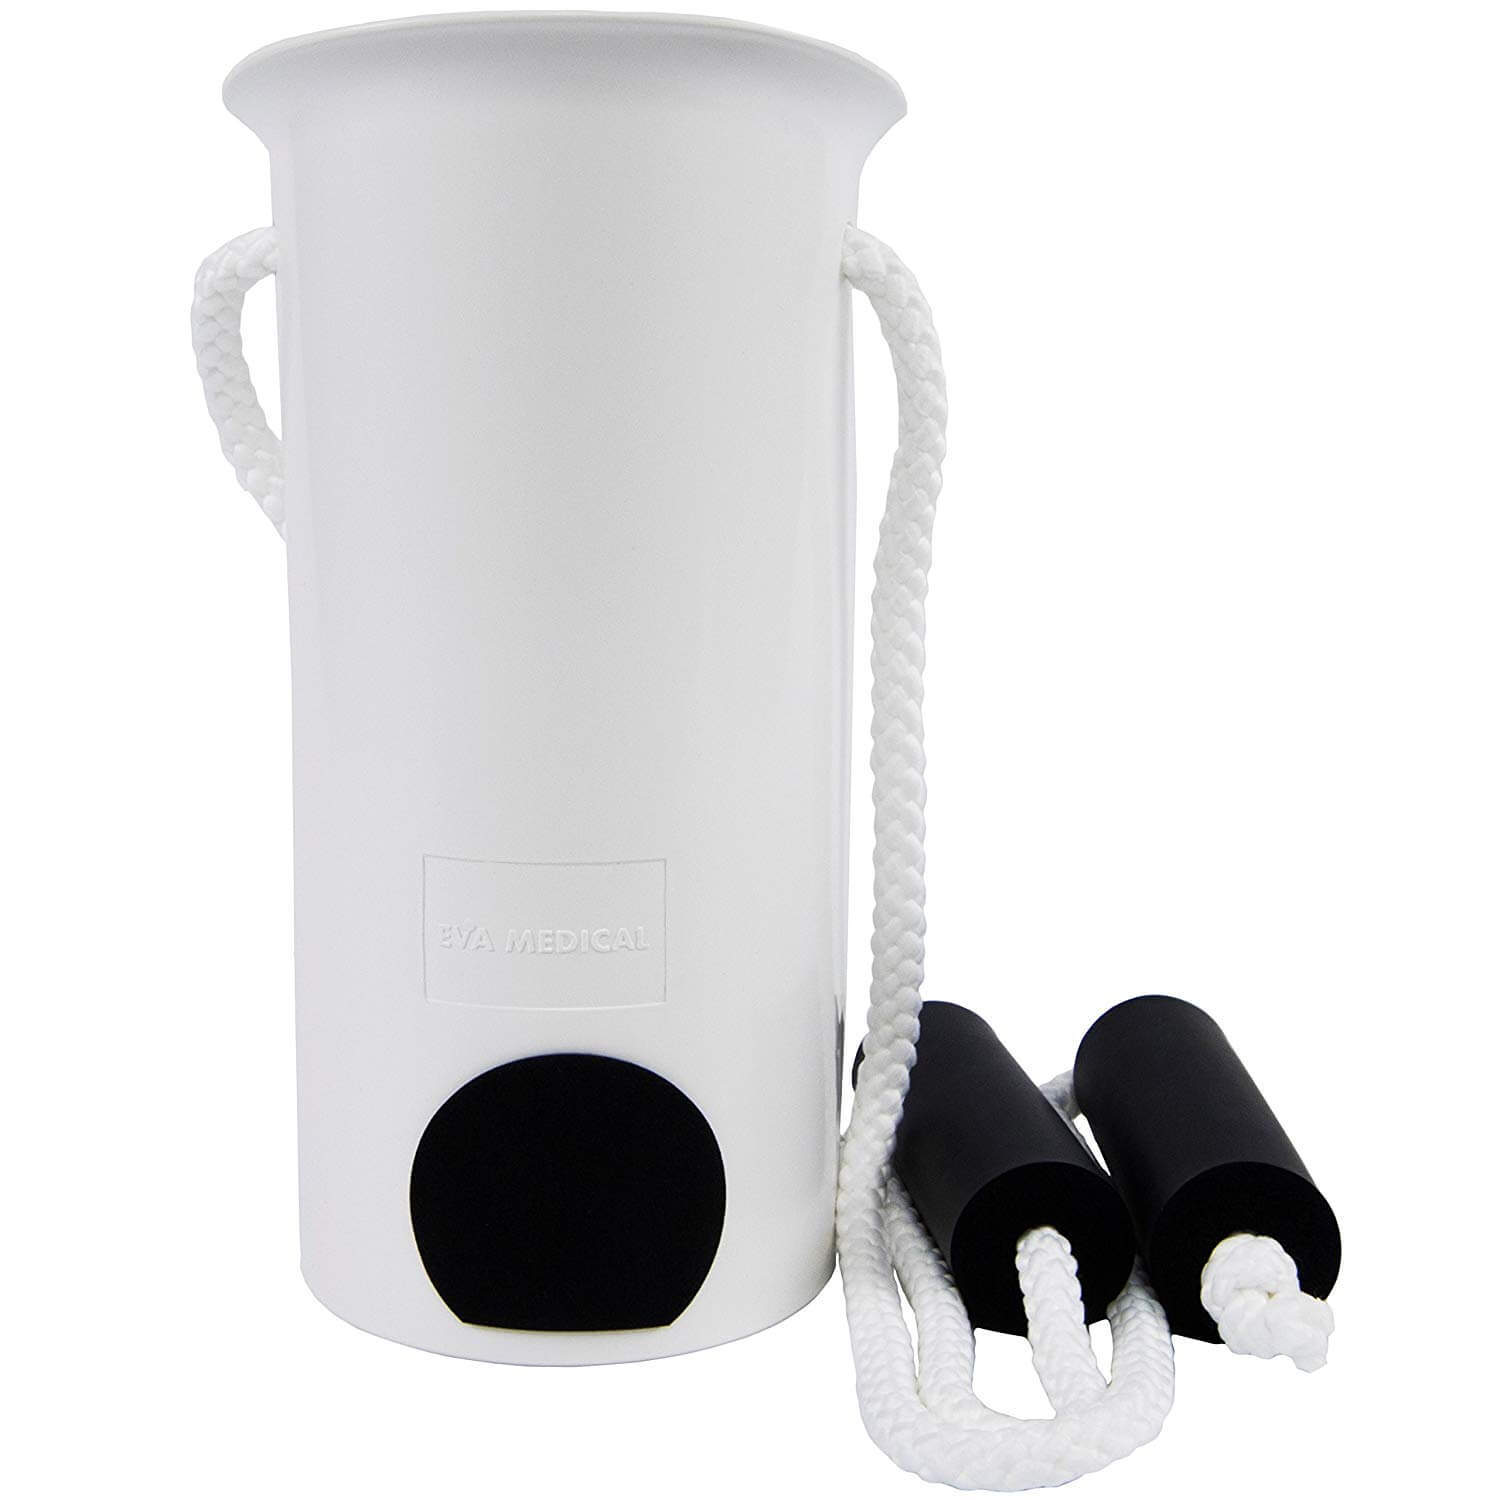 Vaunn Medical EZ-TUG Sock Aid with Foam Grip Handles and Length Adjustable Cords